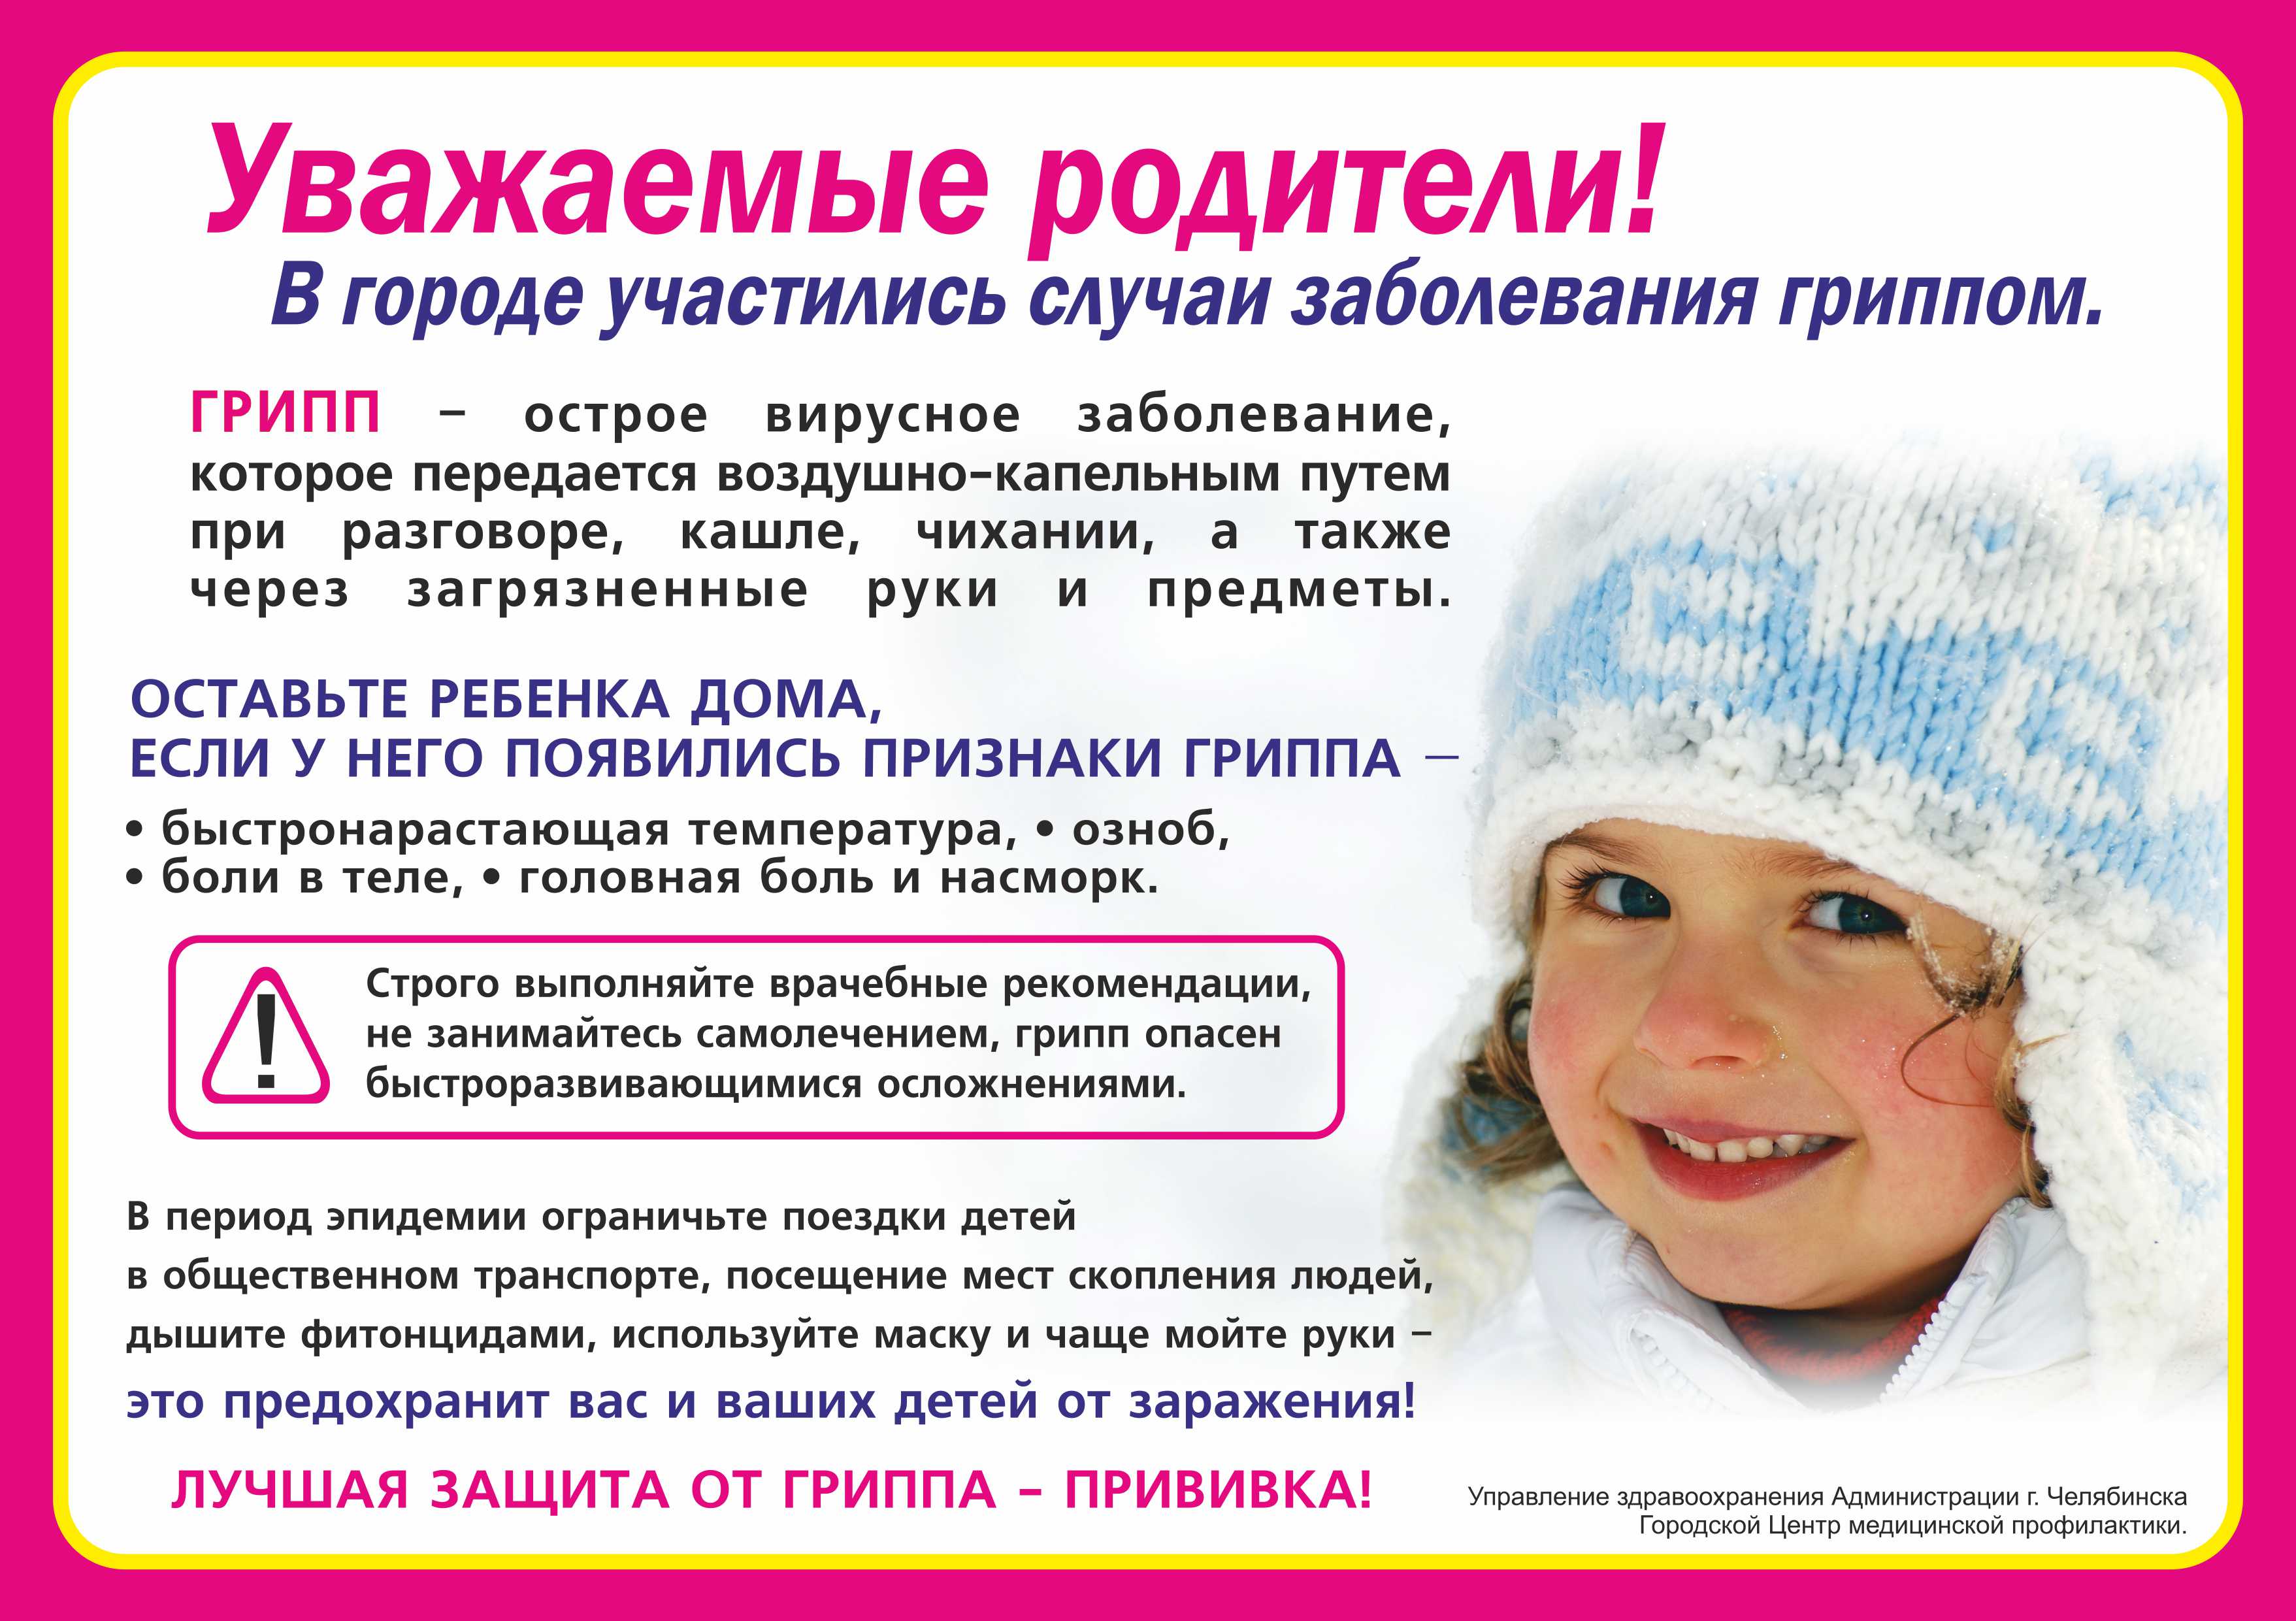 Прививка при кашле можно ли. Профилактика простудных заболеваний зимой. Уважаемые родители дети с признаками ОРВИ. Профилактика при гриппе. Профилактика ОРВИ памятка.